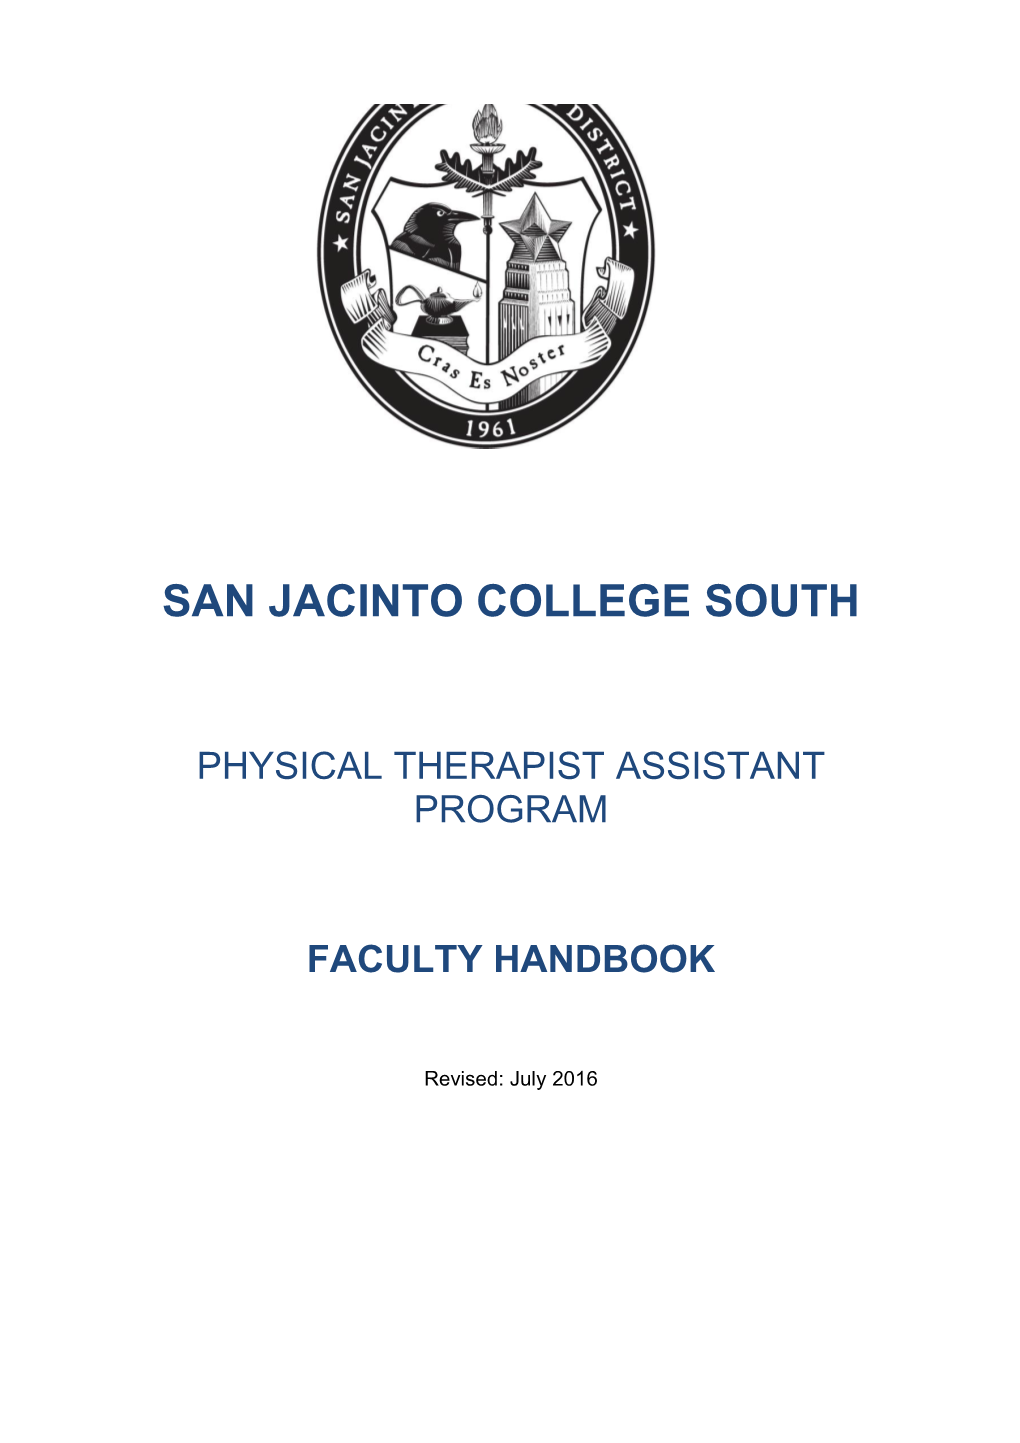 San Jacinto College South